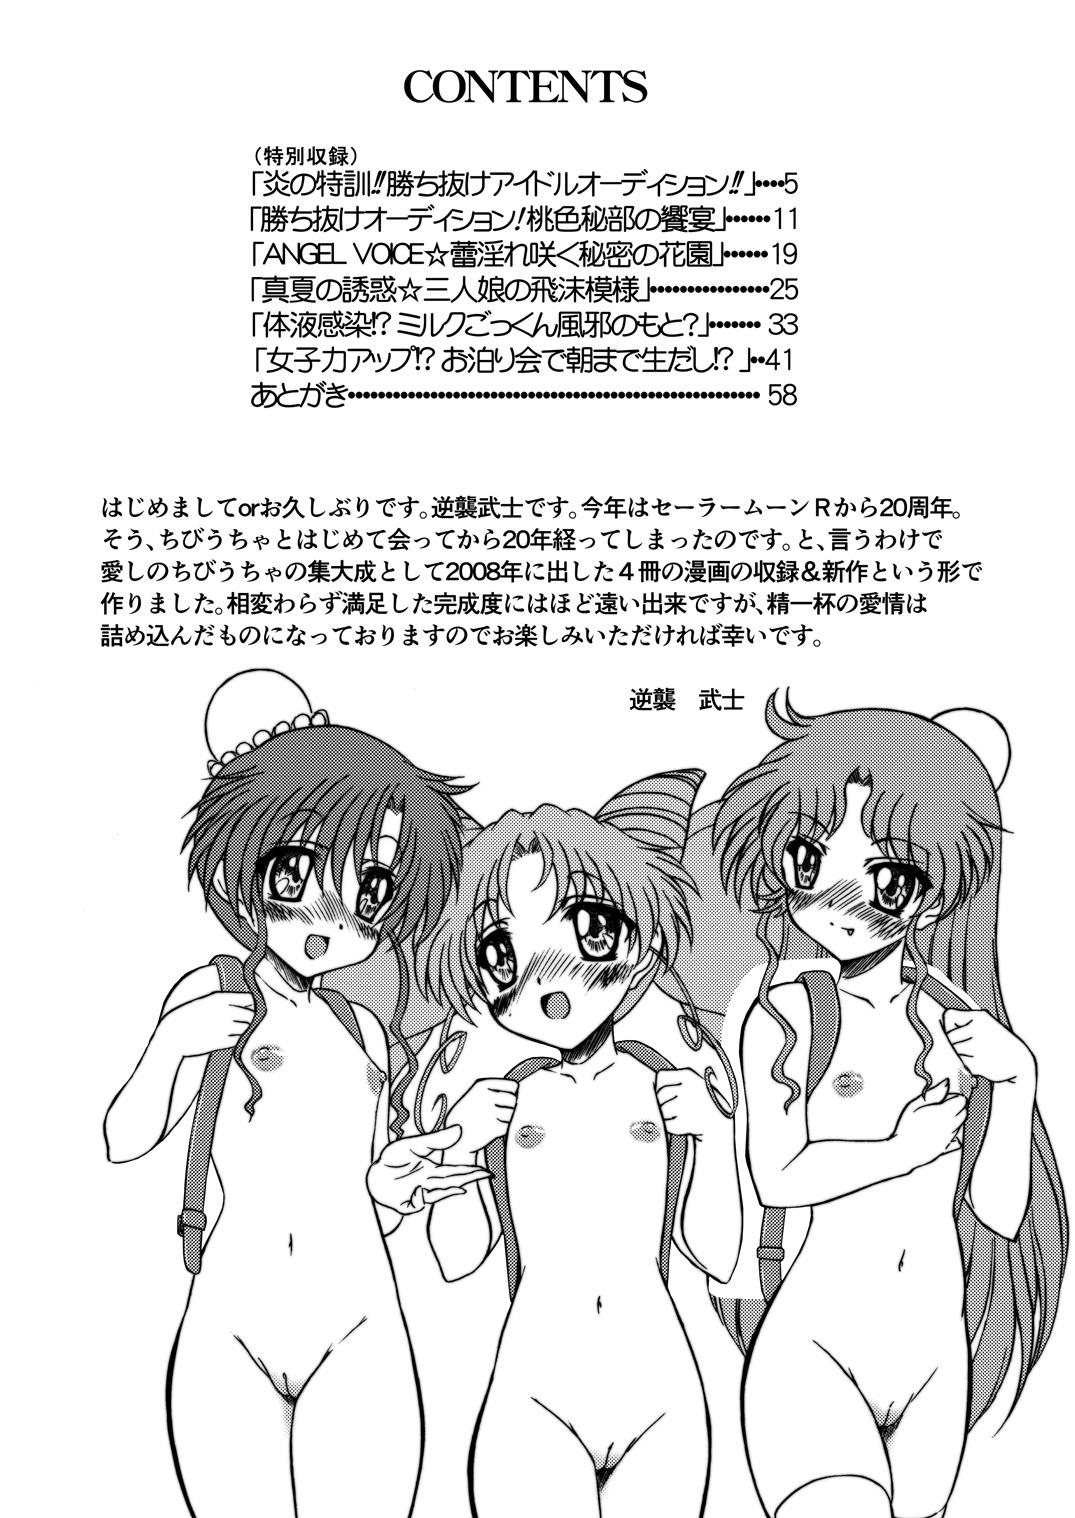 Foot Worship PINK SUGAR 20th Anniversary Special - Sailor moon | bishoujo senshi sailor moon Gay Military - Page 4